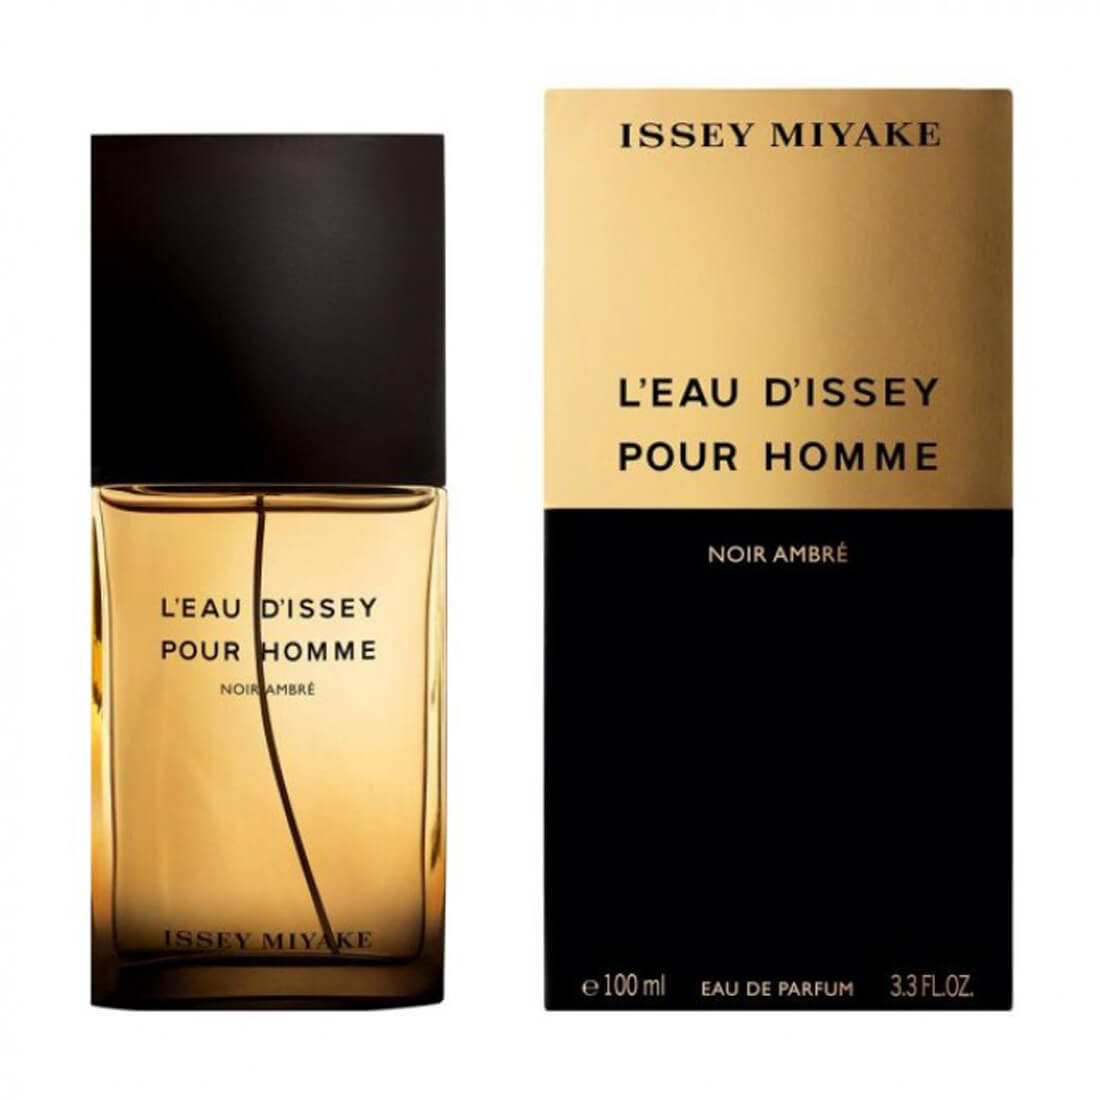 Issey Miyake L'Eau d'Issey Pour Homme Noir Ambre Eau De Parfum